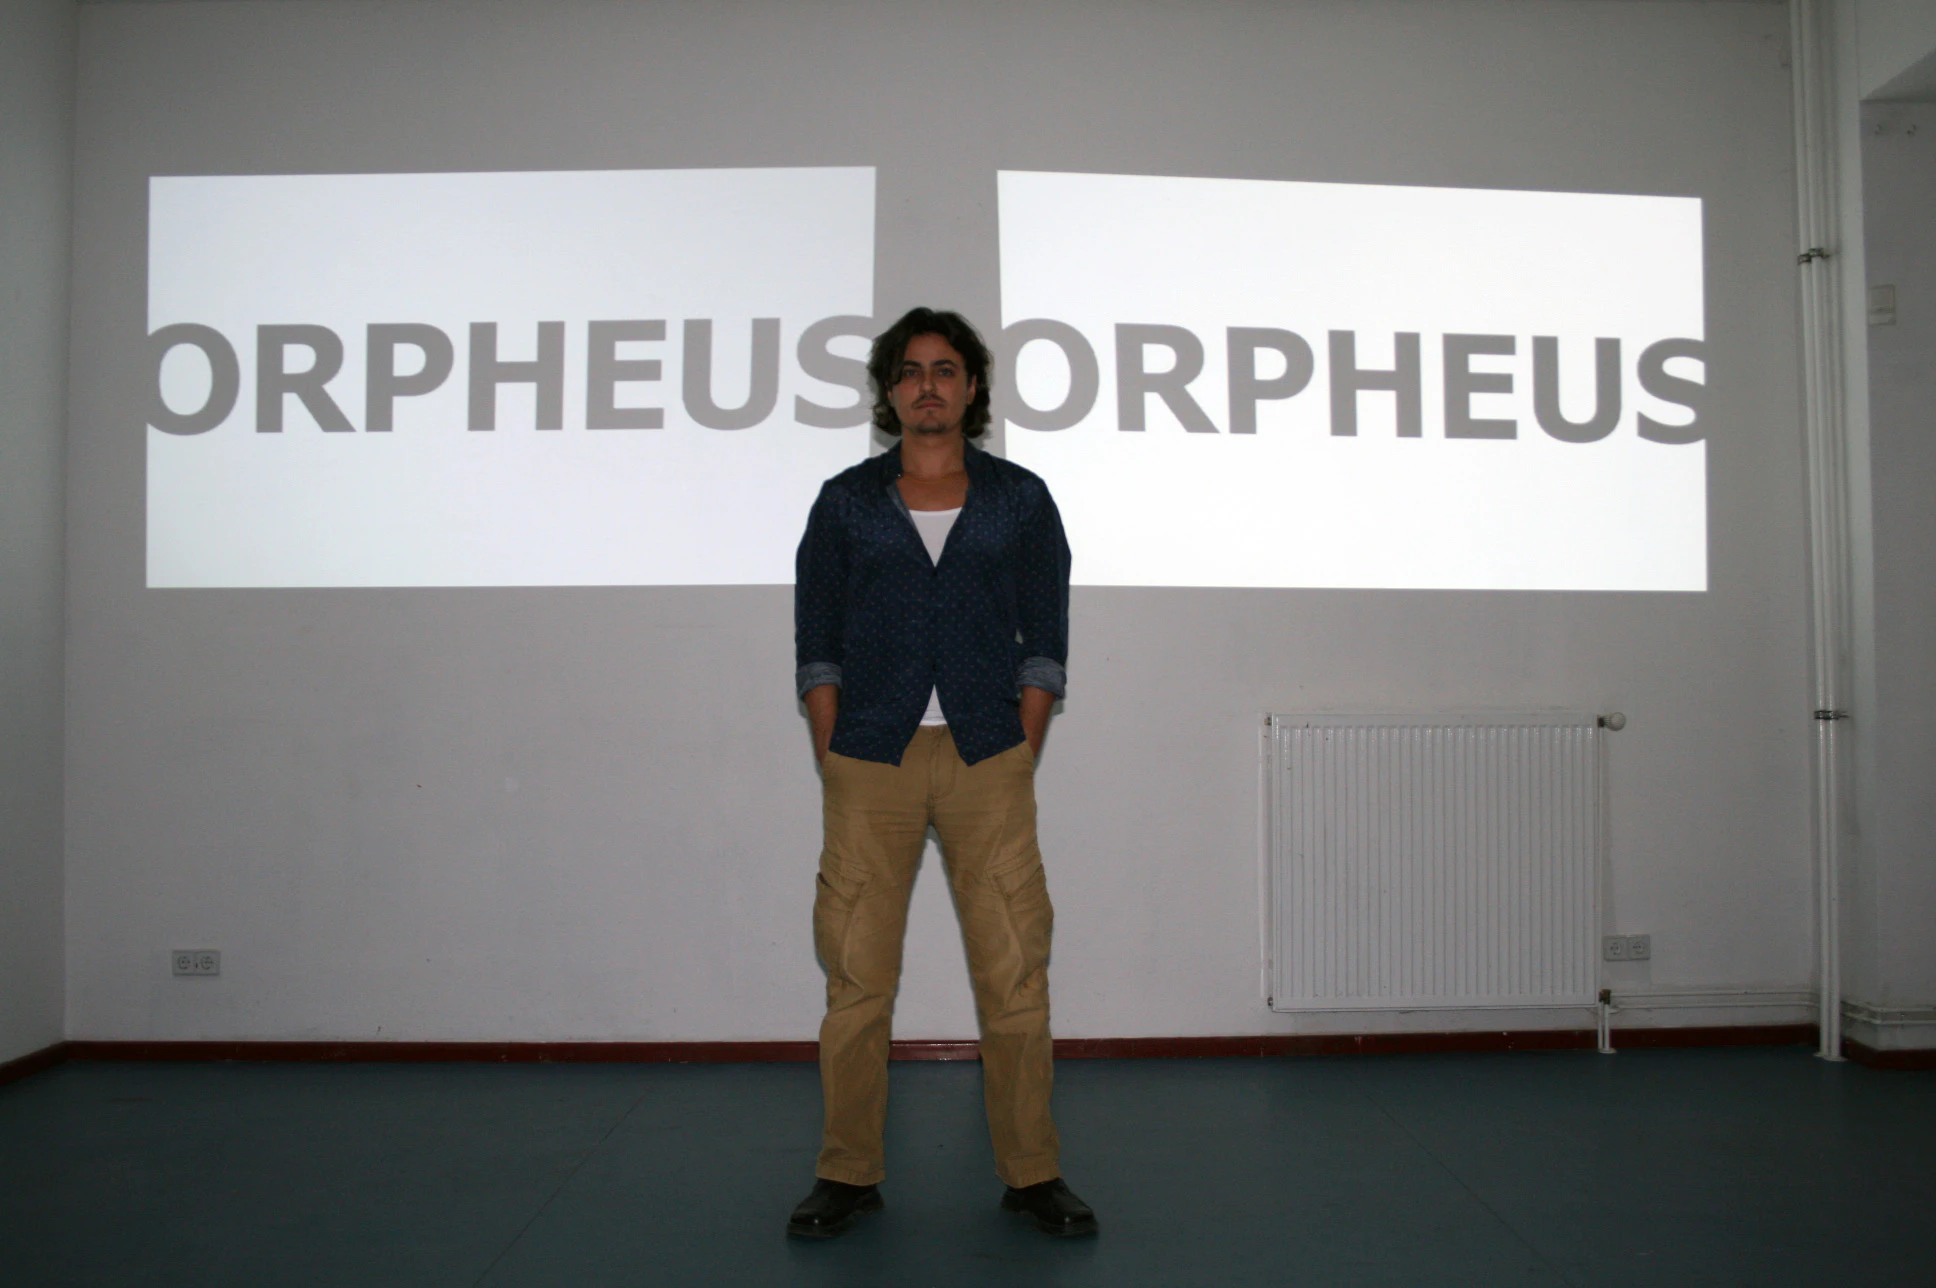 Orpheus & Orpheus (video poem)